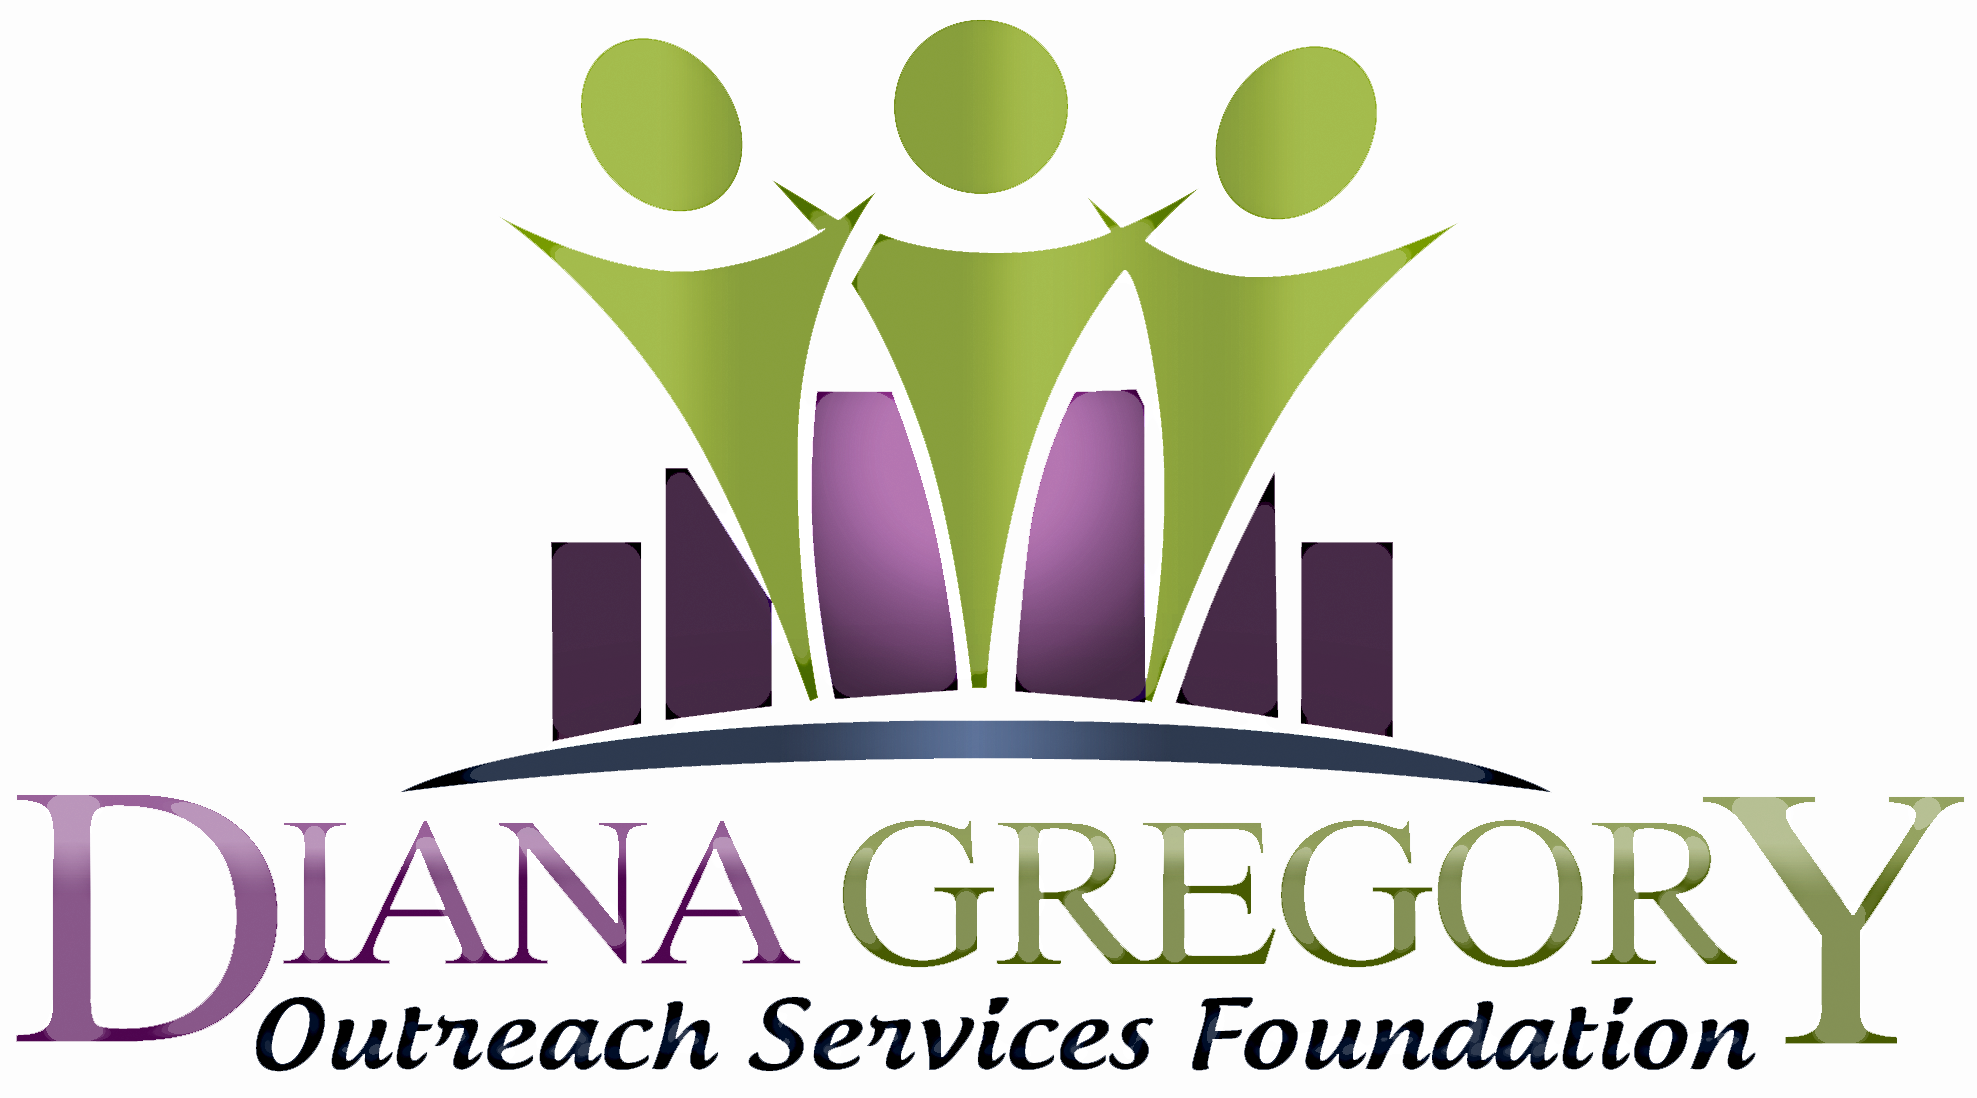 Diana Gregory Outreach Service Foundation